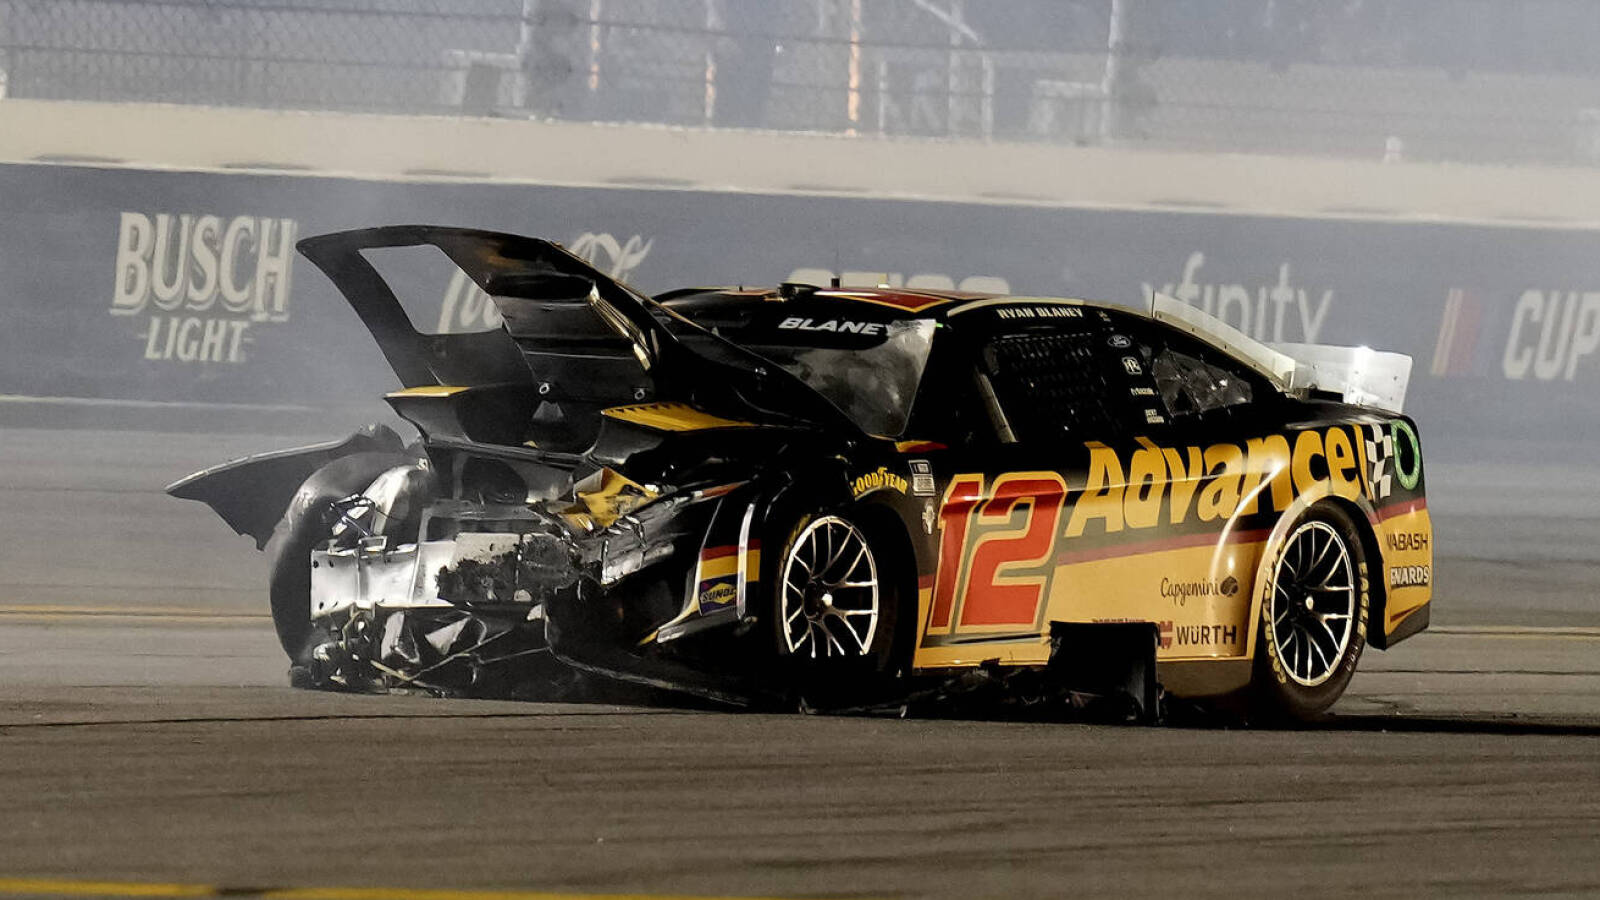 Ryan Blaney's Daytona crash eerily similar to Dale Earnhardt's 22 years ago